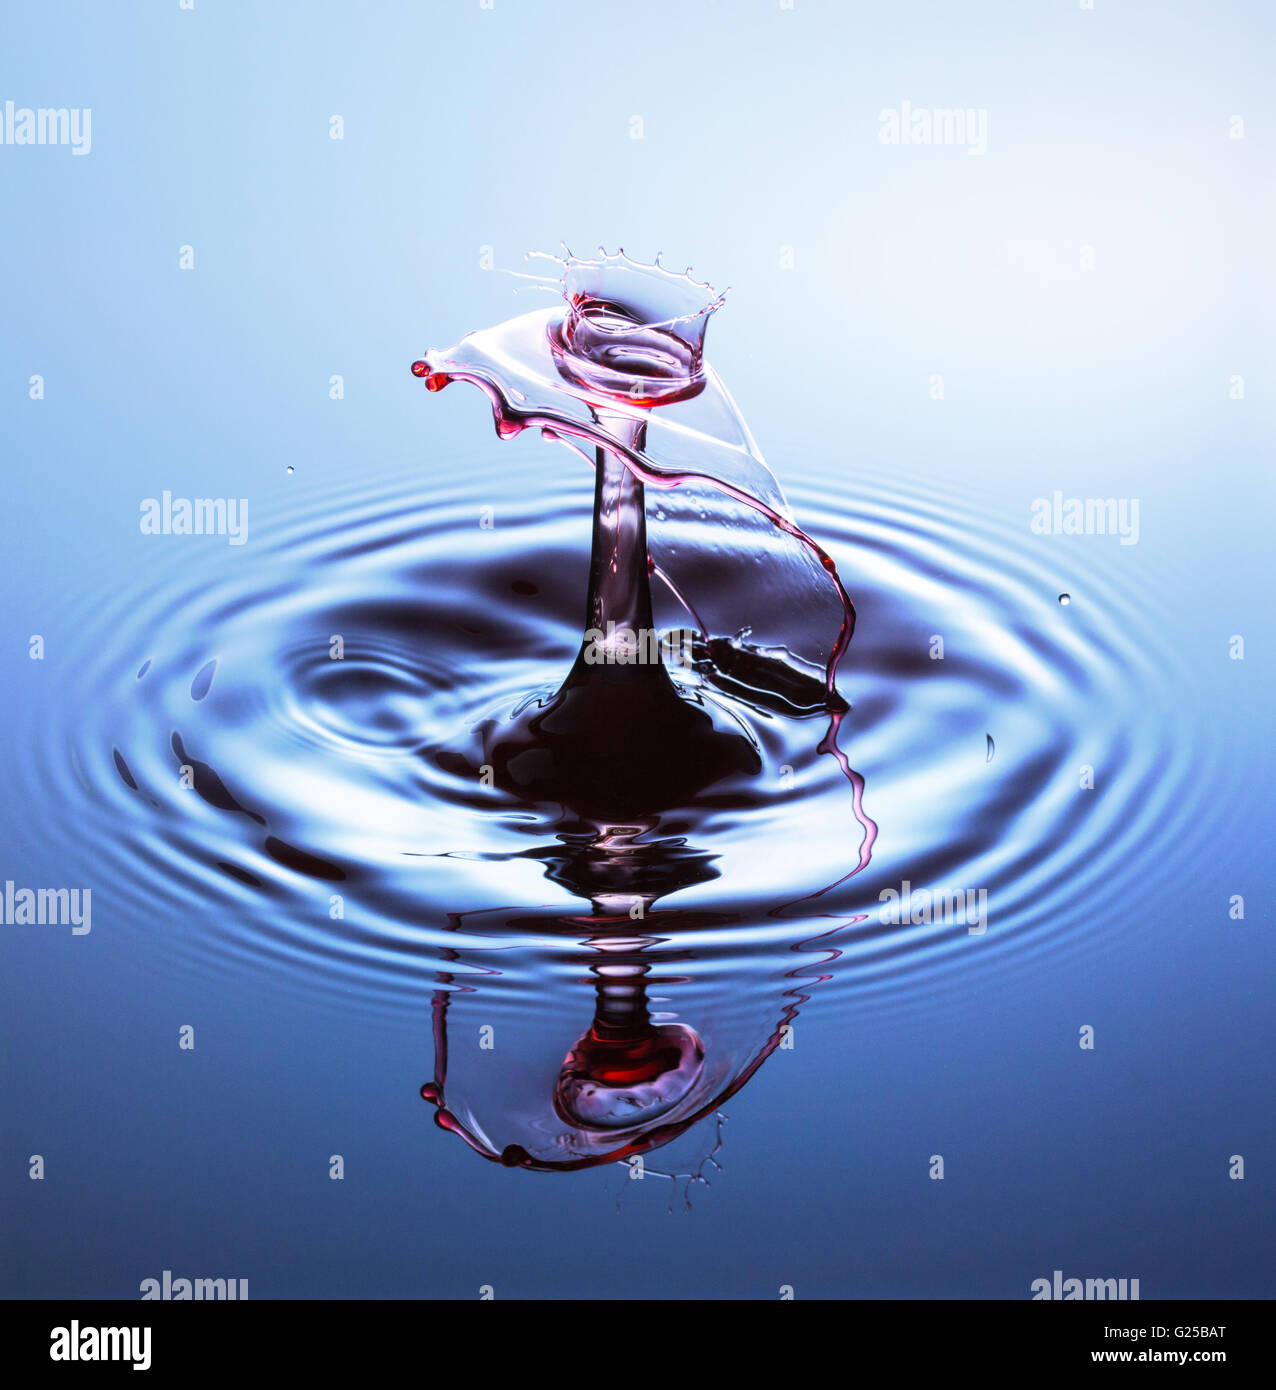 Fotografía de la gota de agua, una o dos gotas de agua cayeron al agua desde altura y capturado como golpean el agua o chocan w Foto de stock